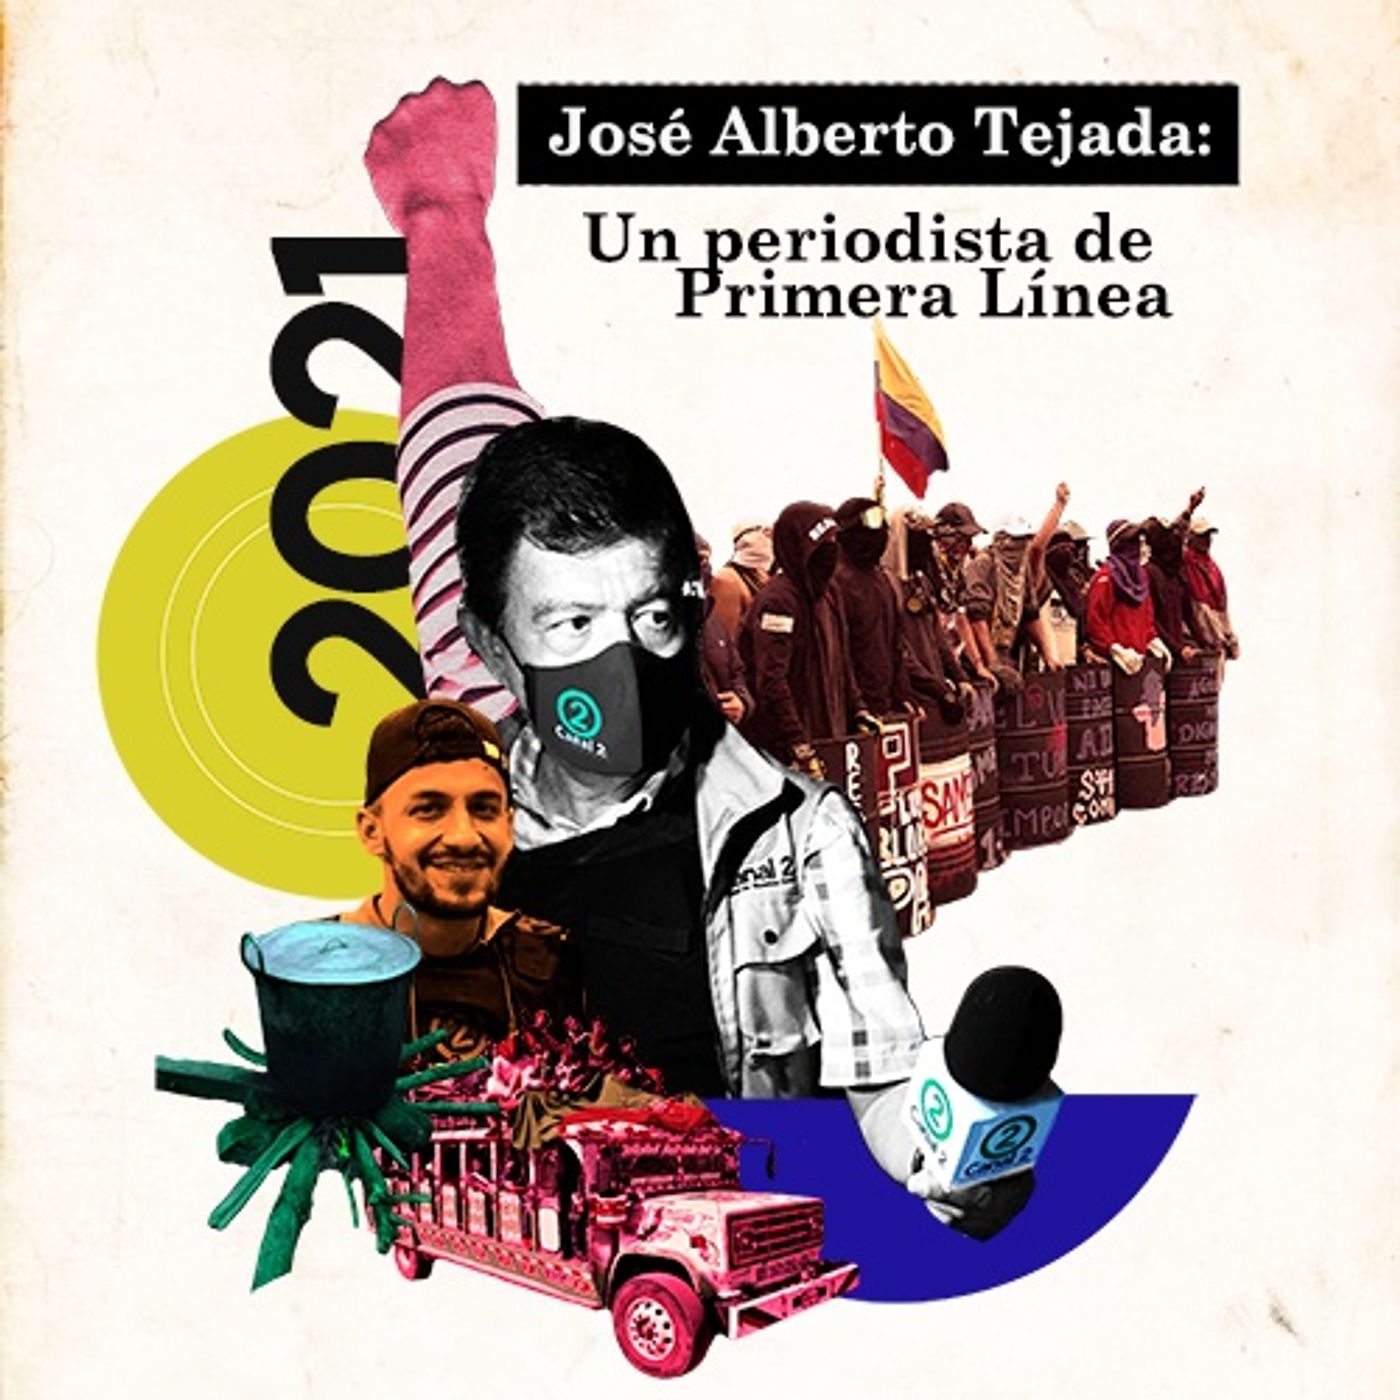 José Alberto Tejada: Un periodista de Primera Linea